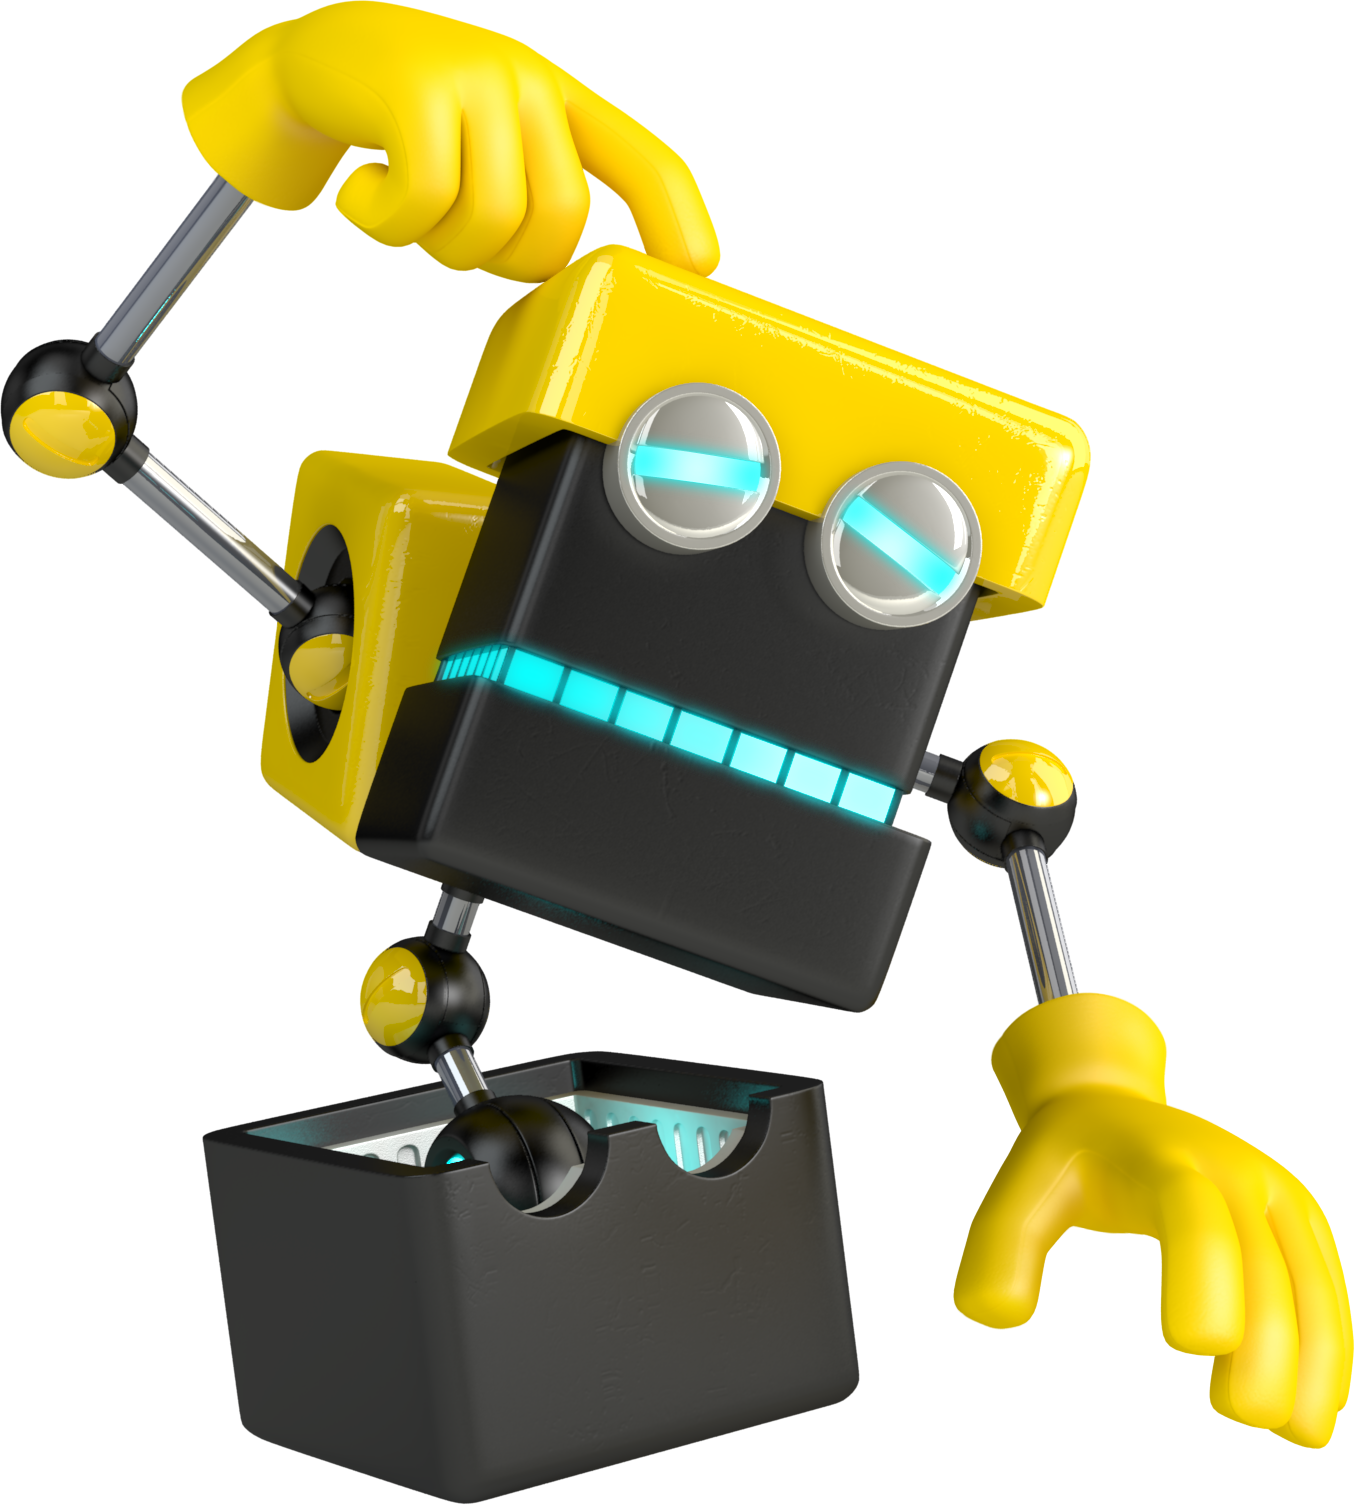 立方體機器人(《刺蝟索尼克》系列中的角色)